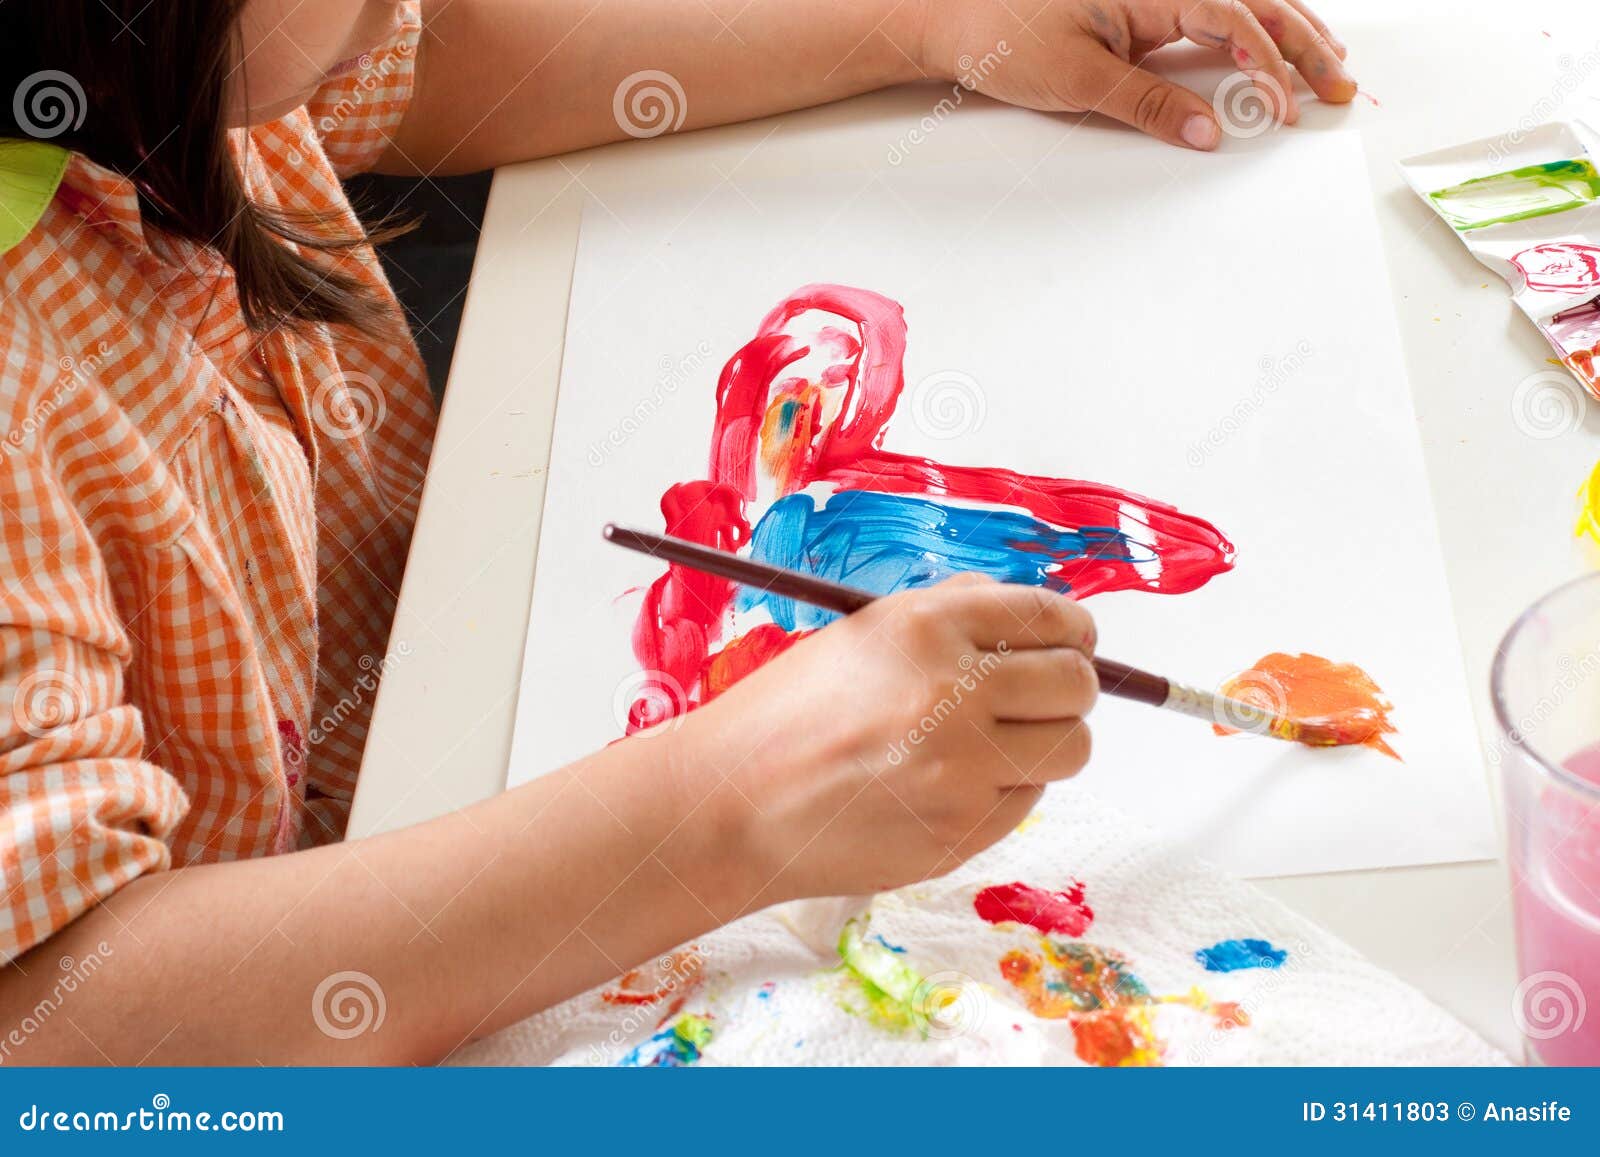 Peinture D'enfant Avec Le Pinceau Image stock - Image du personne